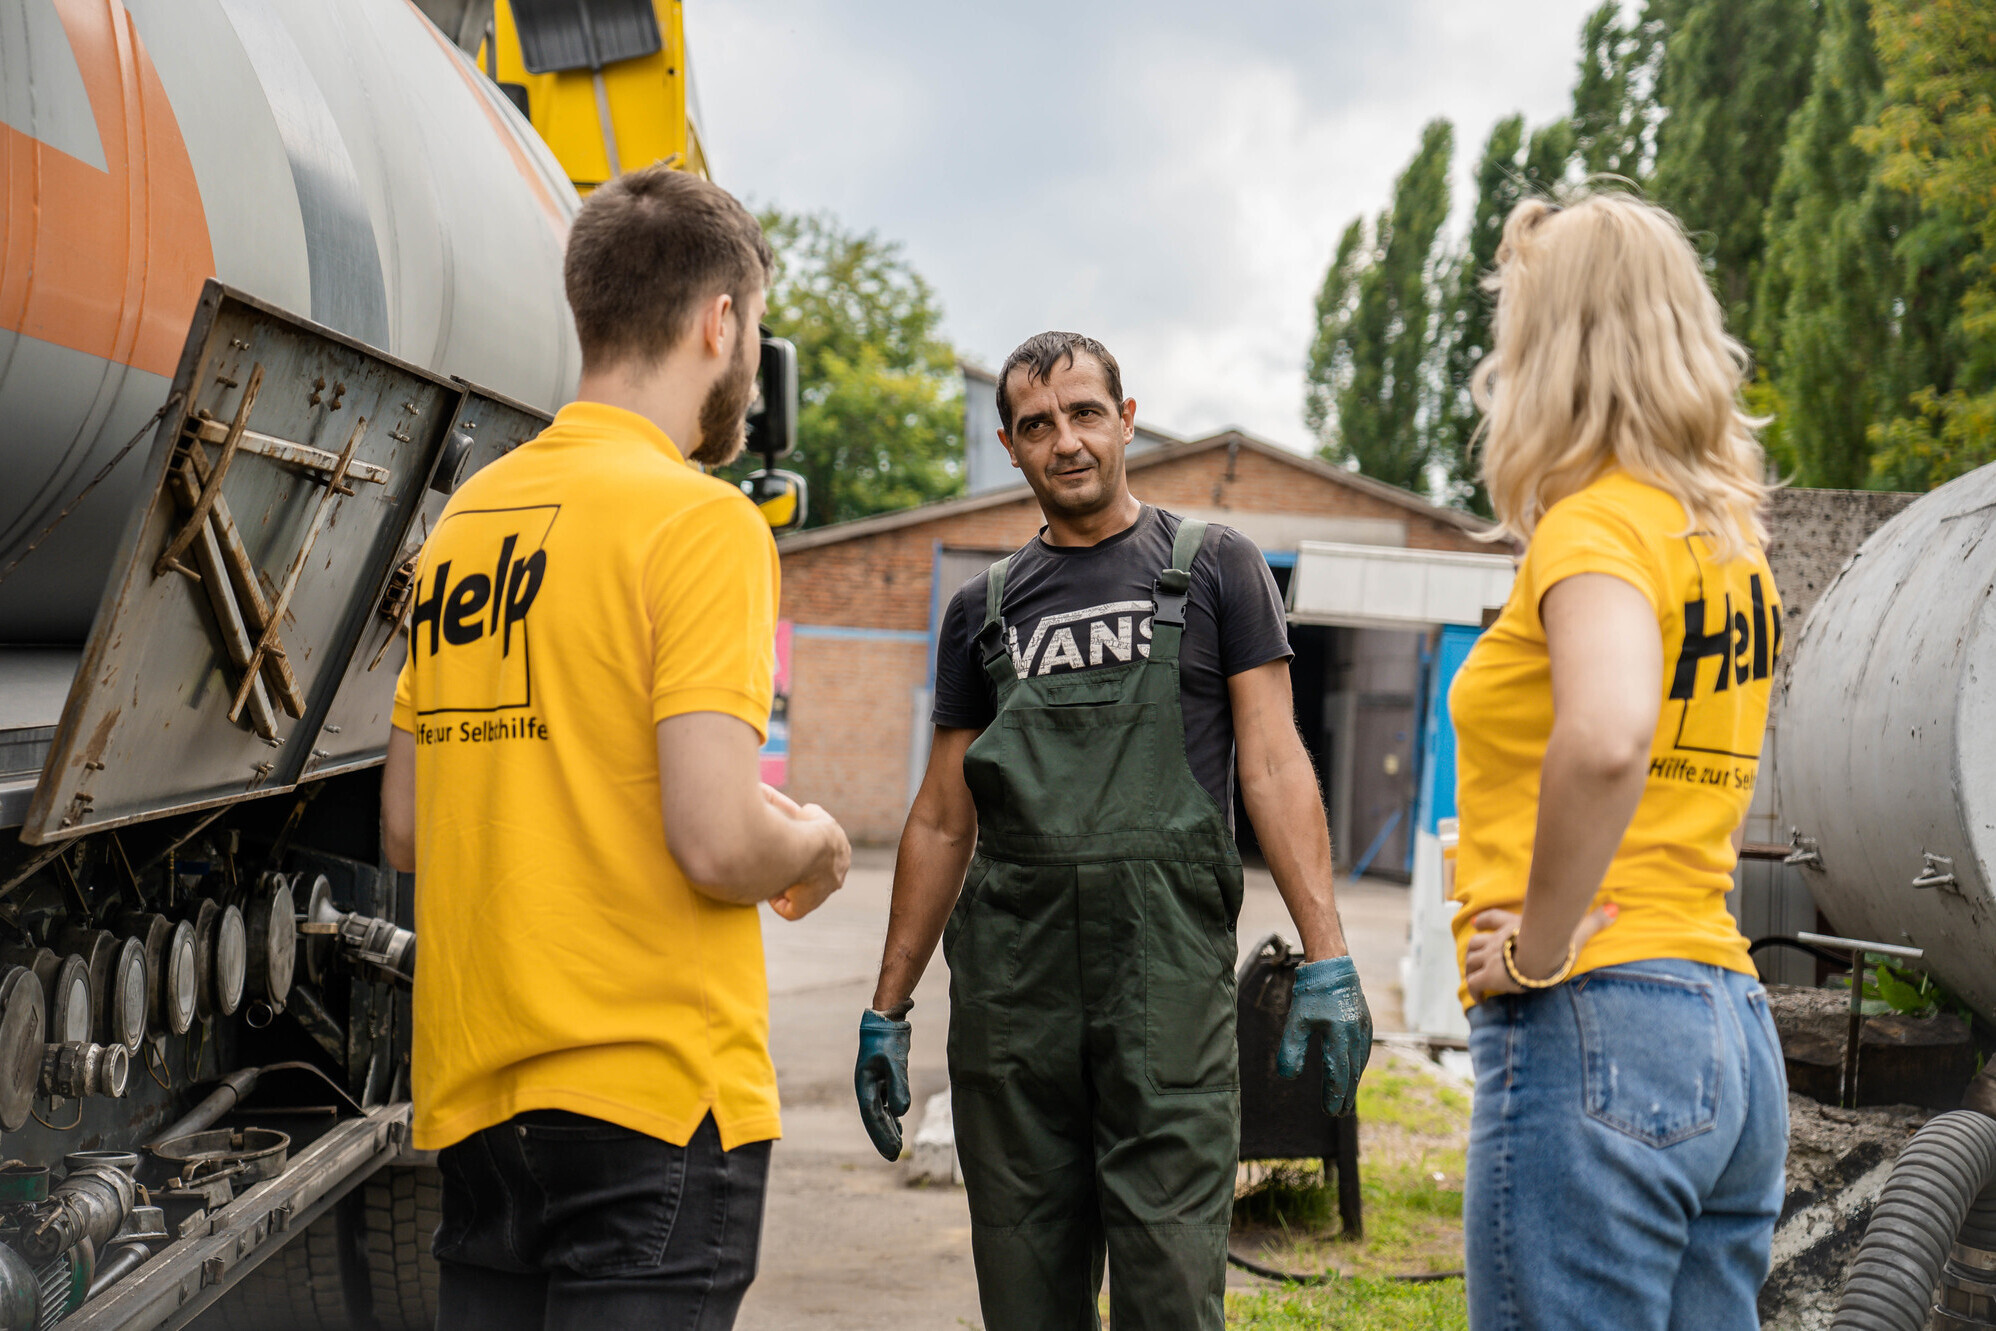 Zwei Mitarbeitende der Organisation Help - Hilfe zur Selbsthilfe in der Ukraine